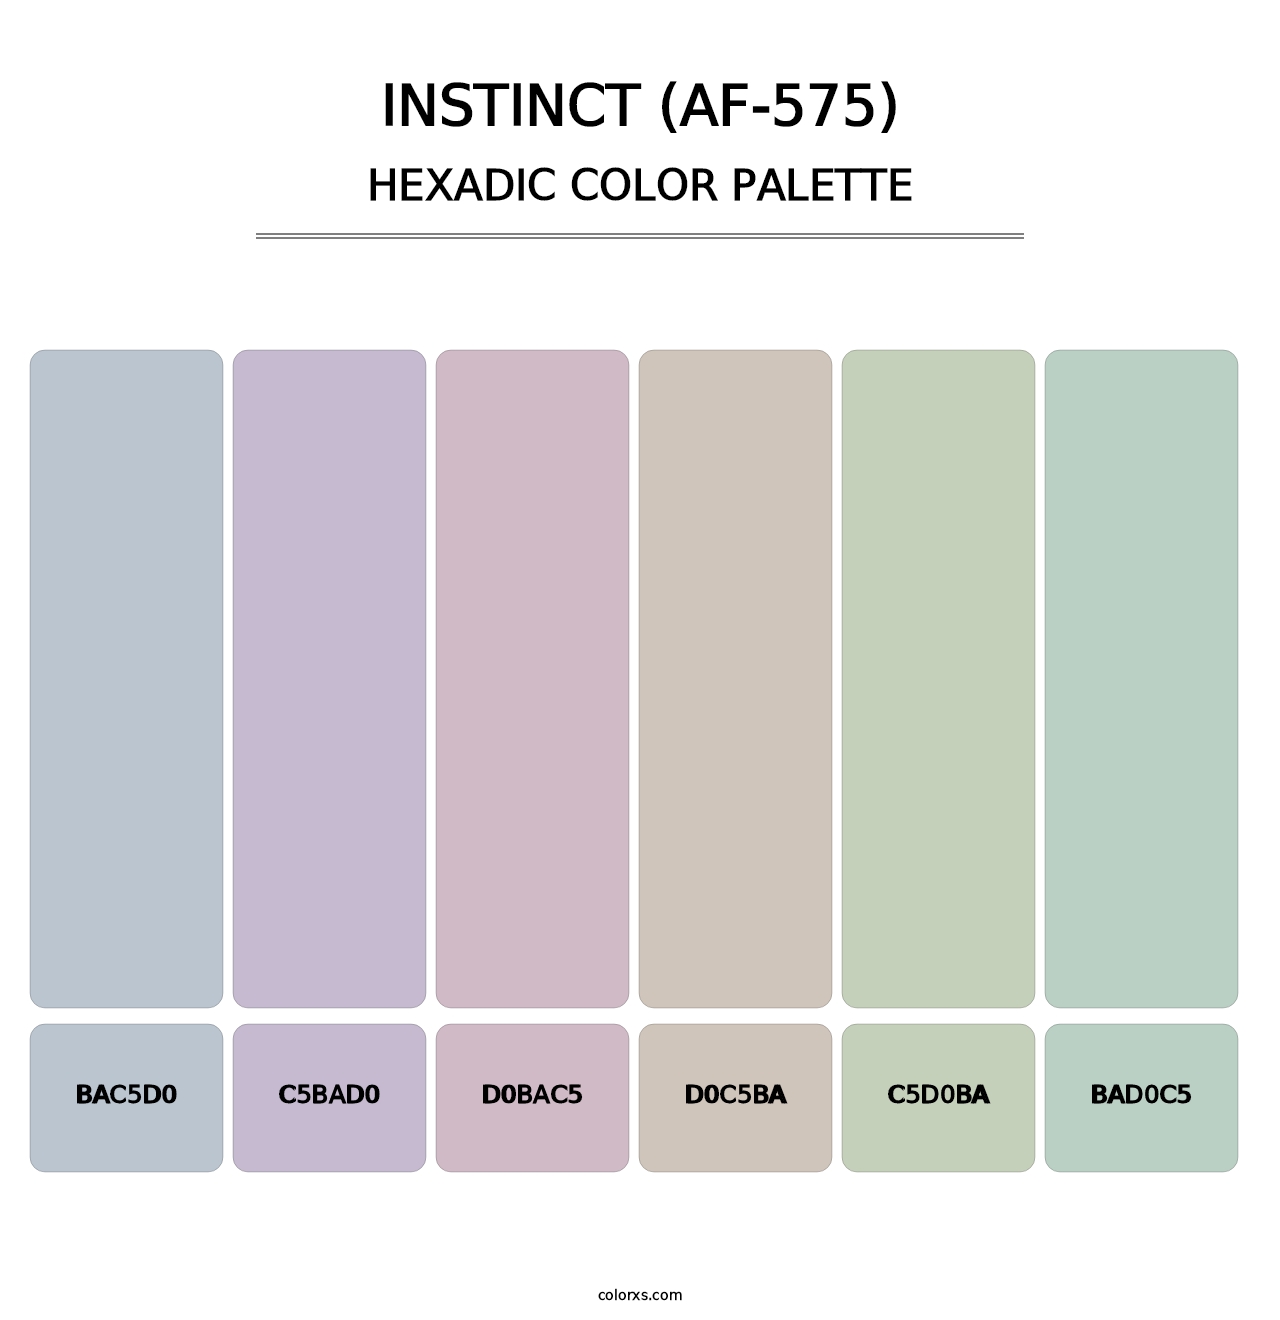 Instinct (AF-575) - Hexadic Color Palette